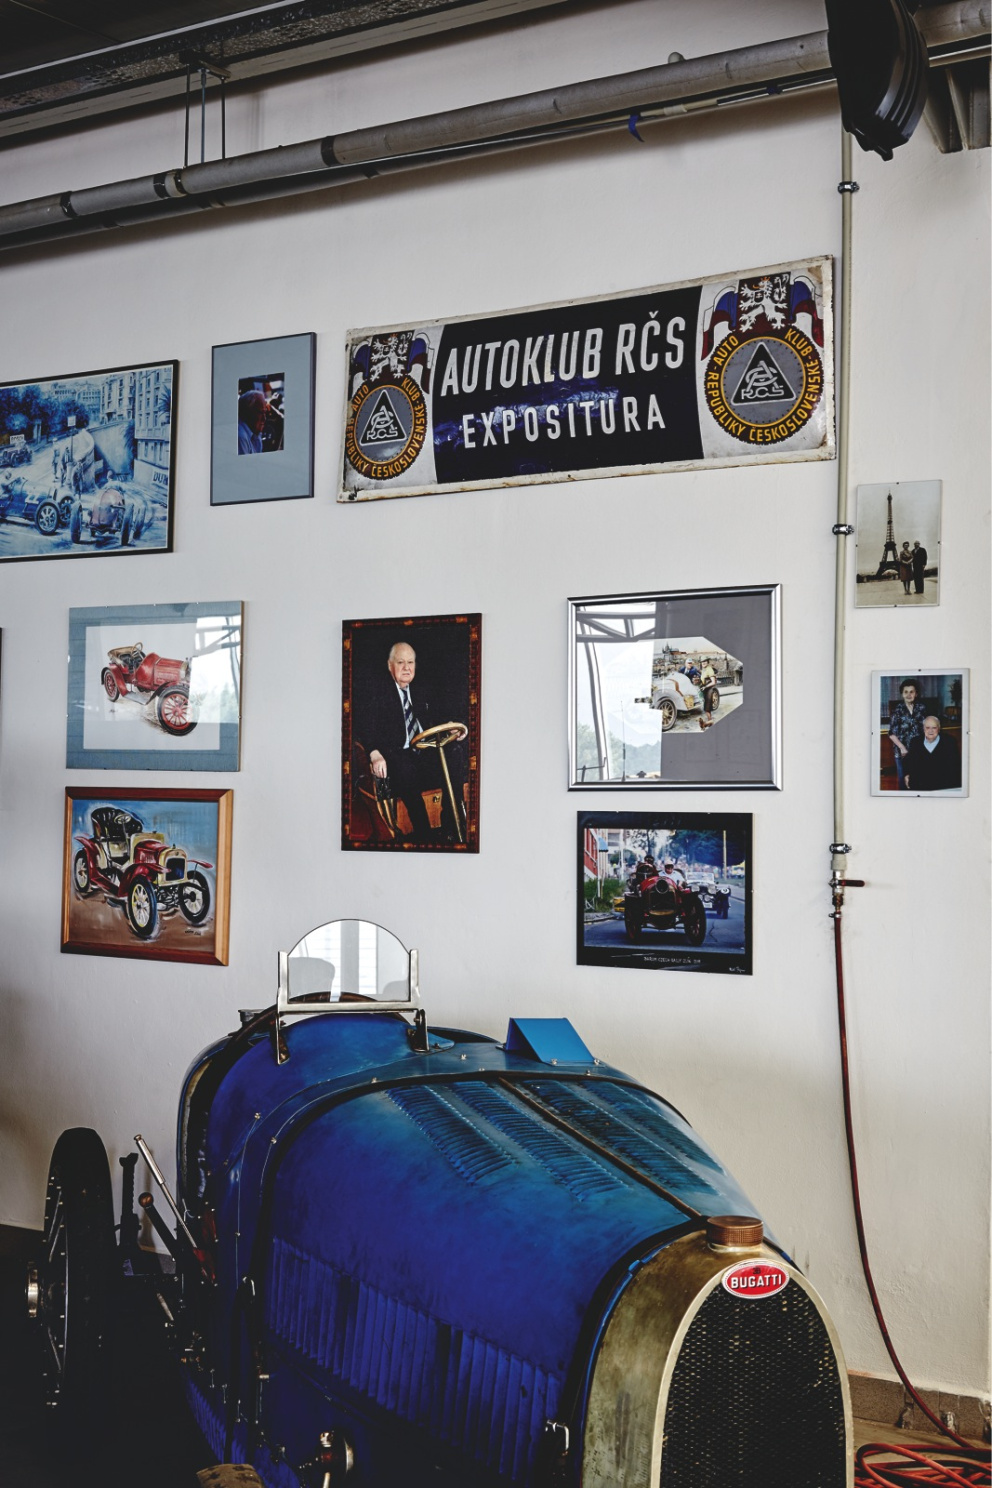 Automobil Bugatti 35, v němž závodila Eliška Junková, rodinná přítelkyně Samohýlových
